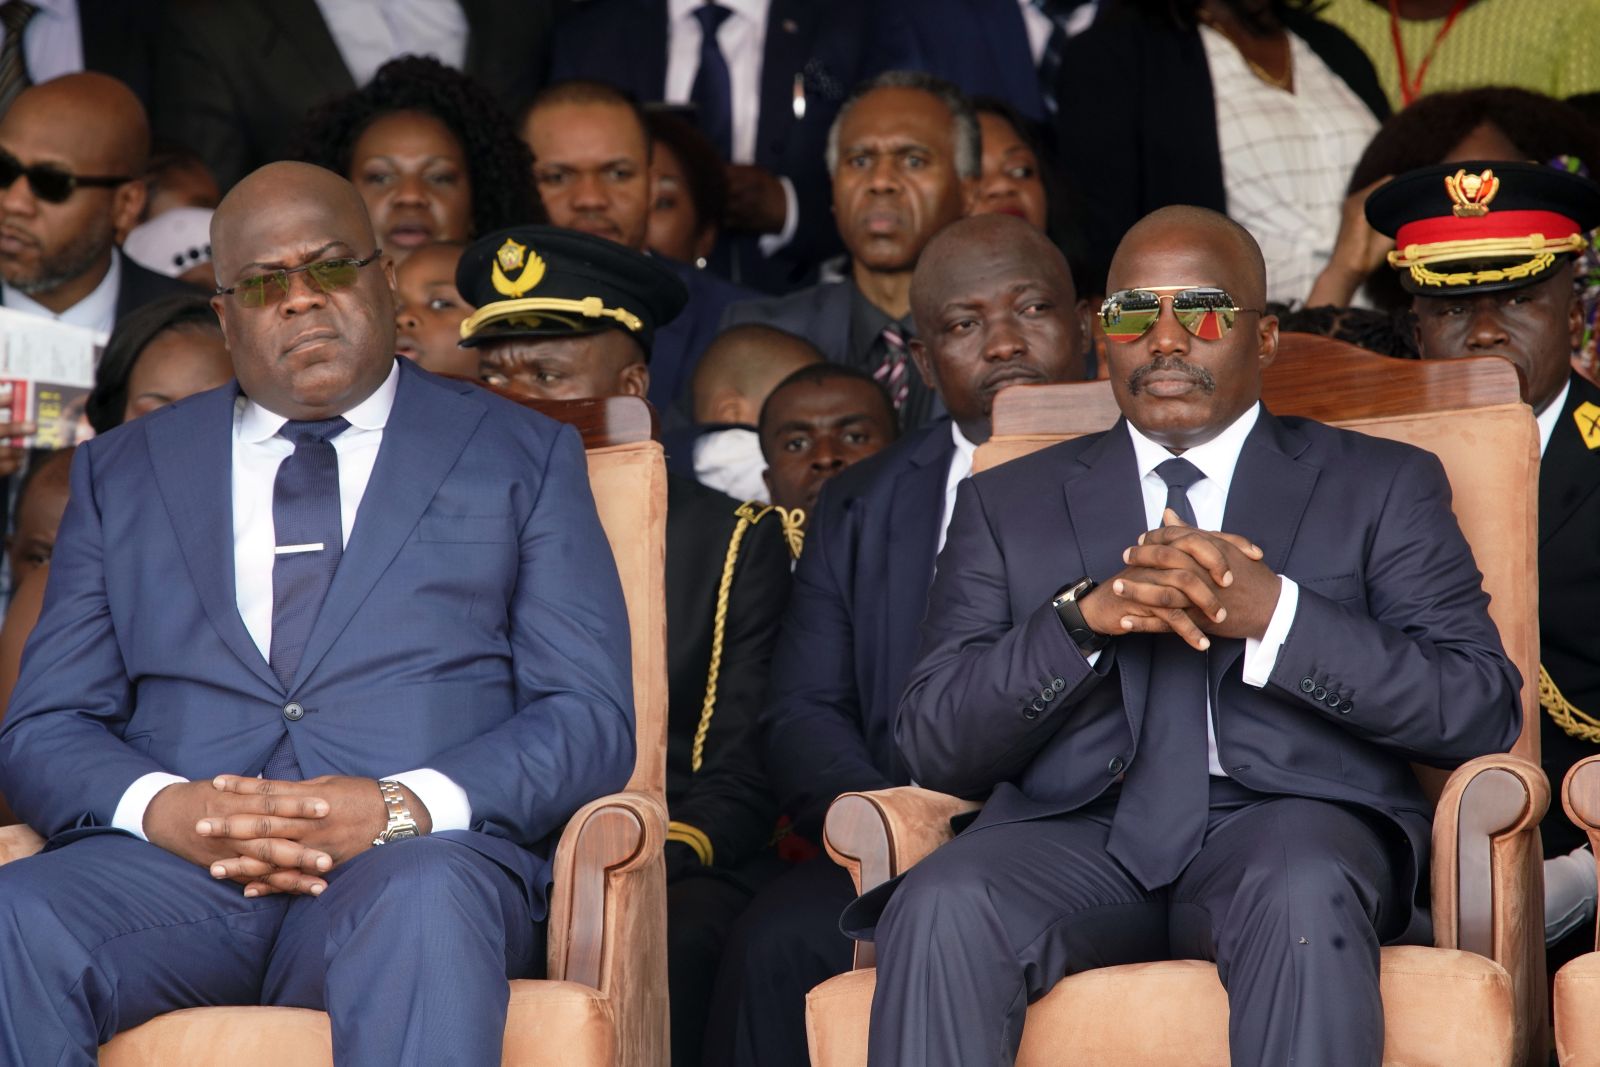 Der neue Präsident Félix Tshisekedi (links) und sein Vorgänger Joseph Kabila bei der Zeremonie zur Amtseinführung am 24. Januar in Kinshasa.